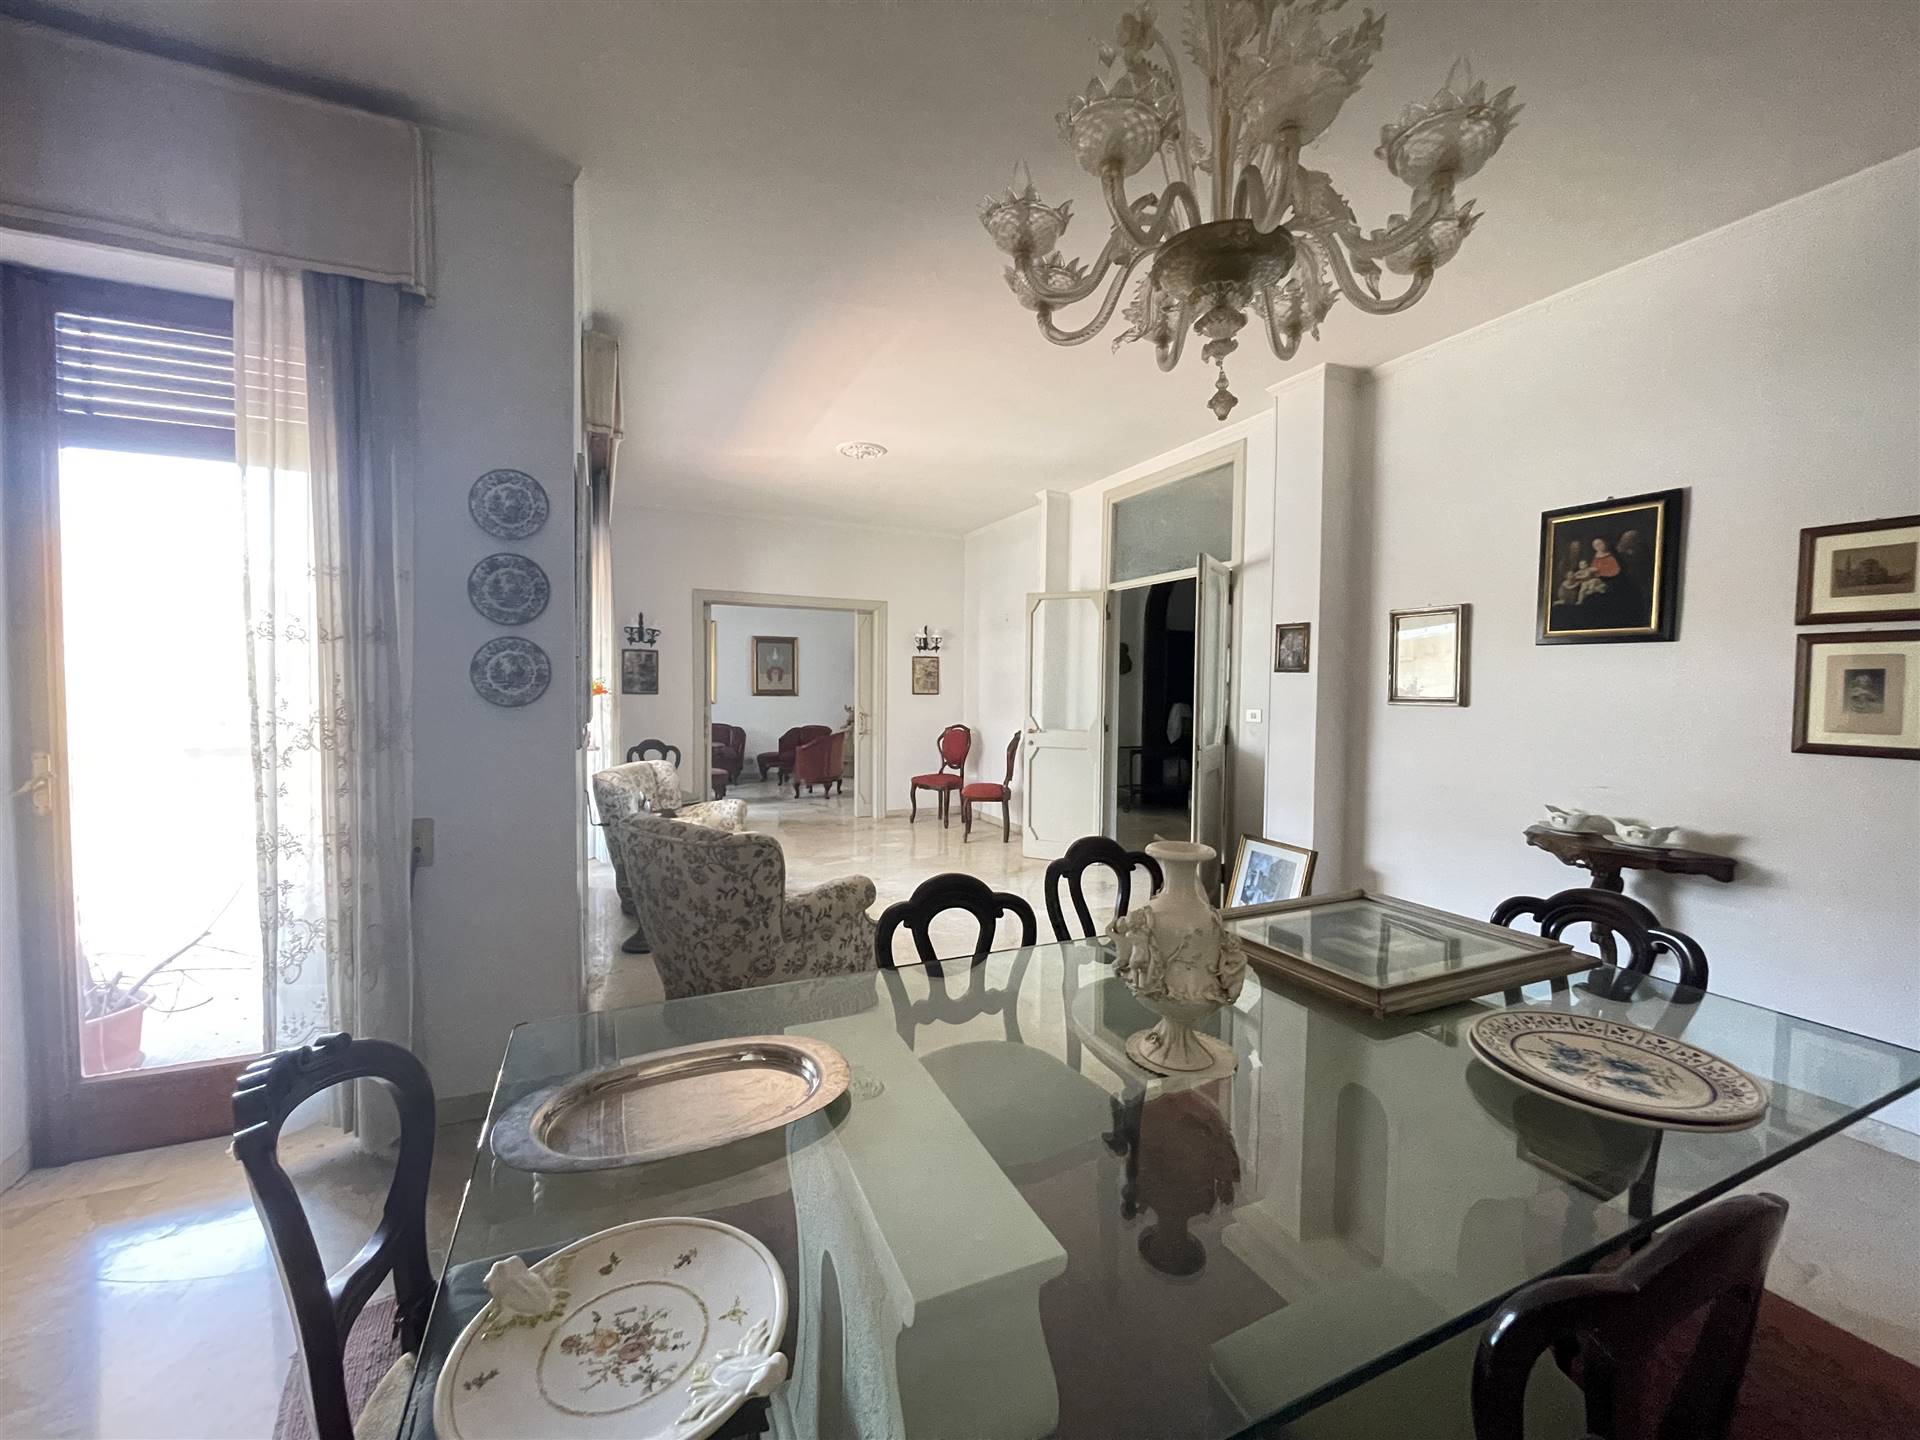 A breve distanza da Piazza Mazzini, abbiamo il piacere di presentarvi elegante e raro appartamento di lusso risalente agli anni 60 di ben oltre 260 